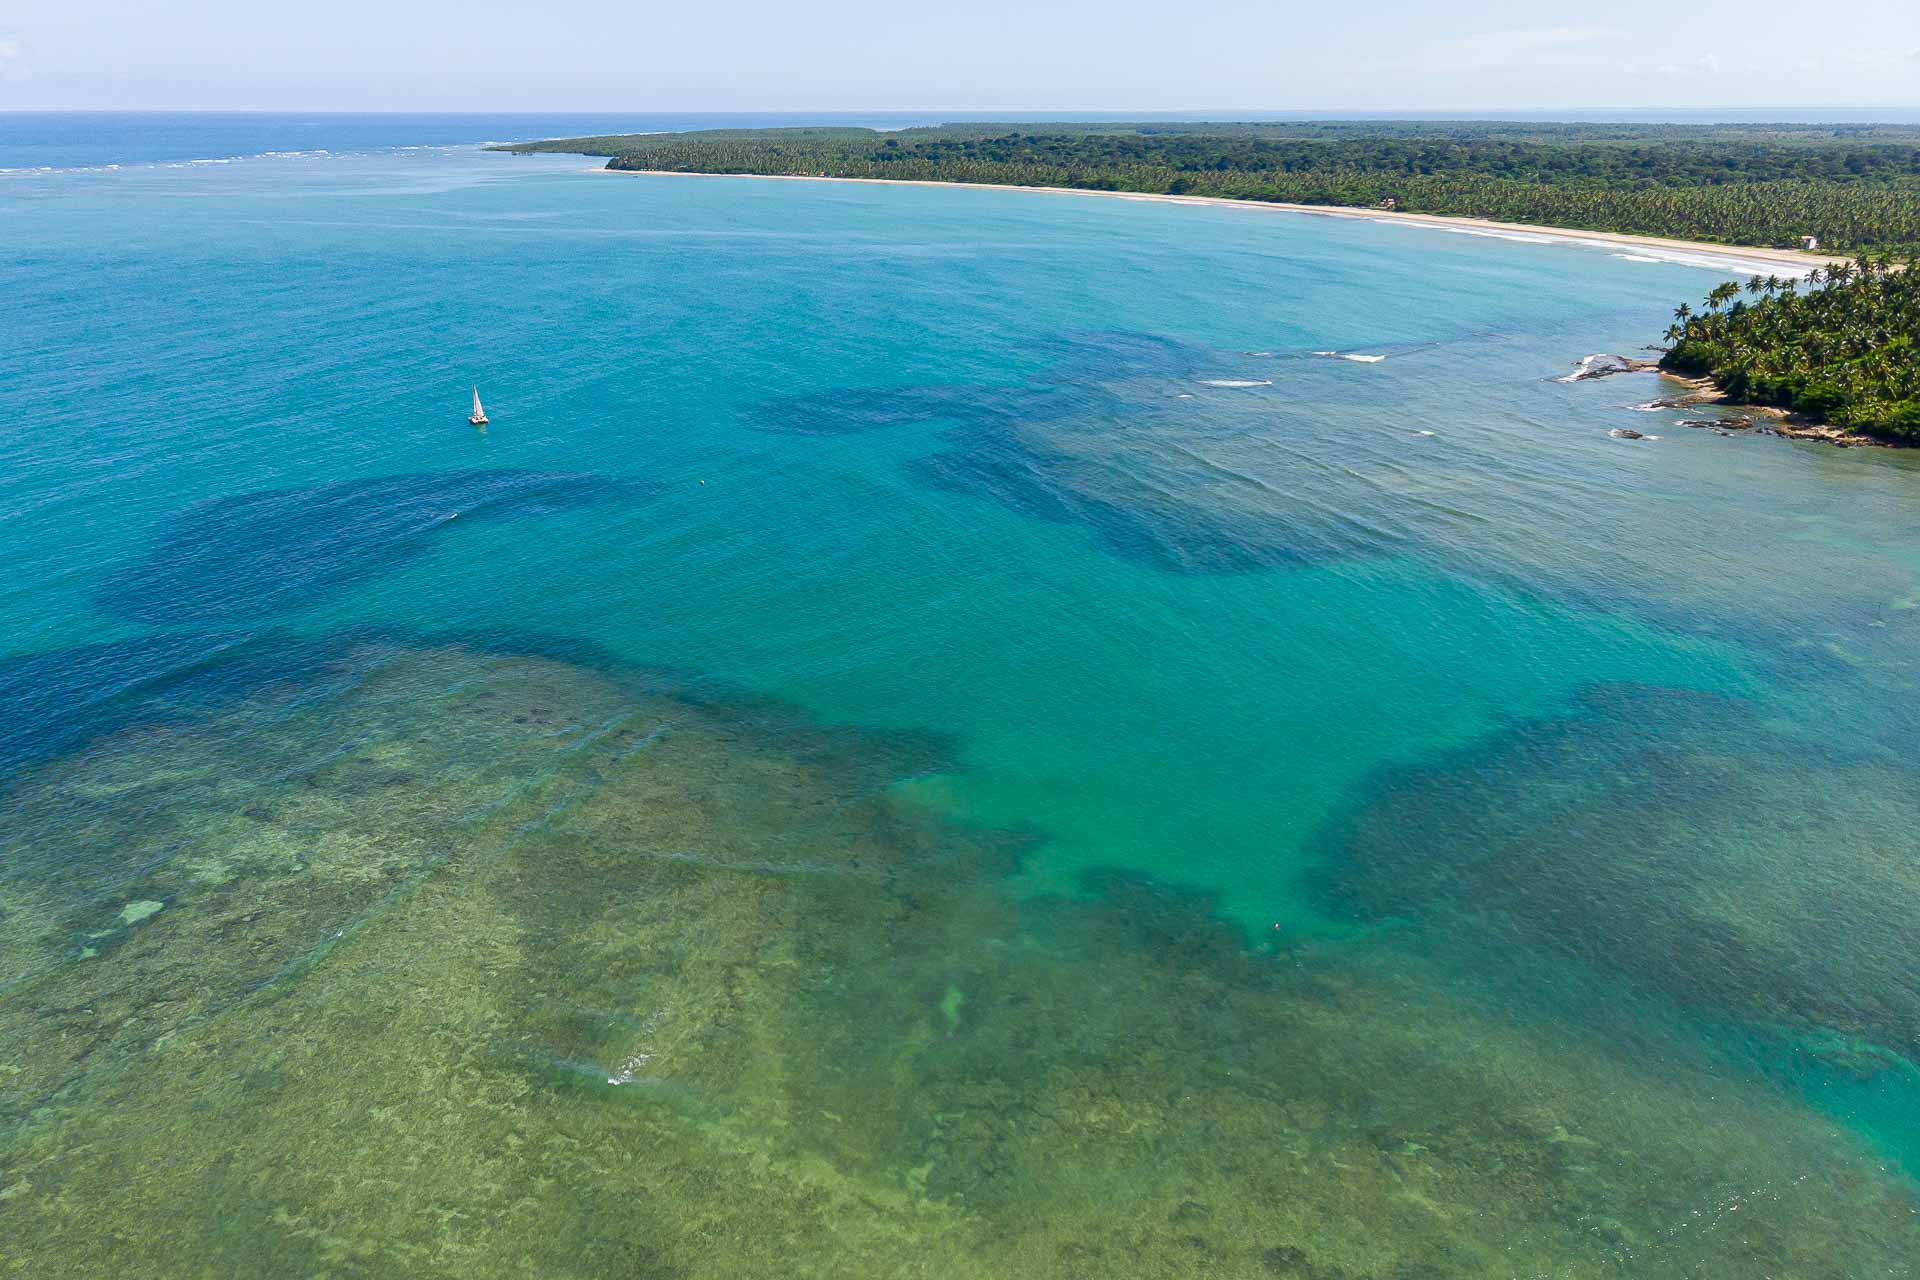 Vista aerea de um mar cheio de corais com uma praia larga ao fundo rodeado de mata